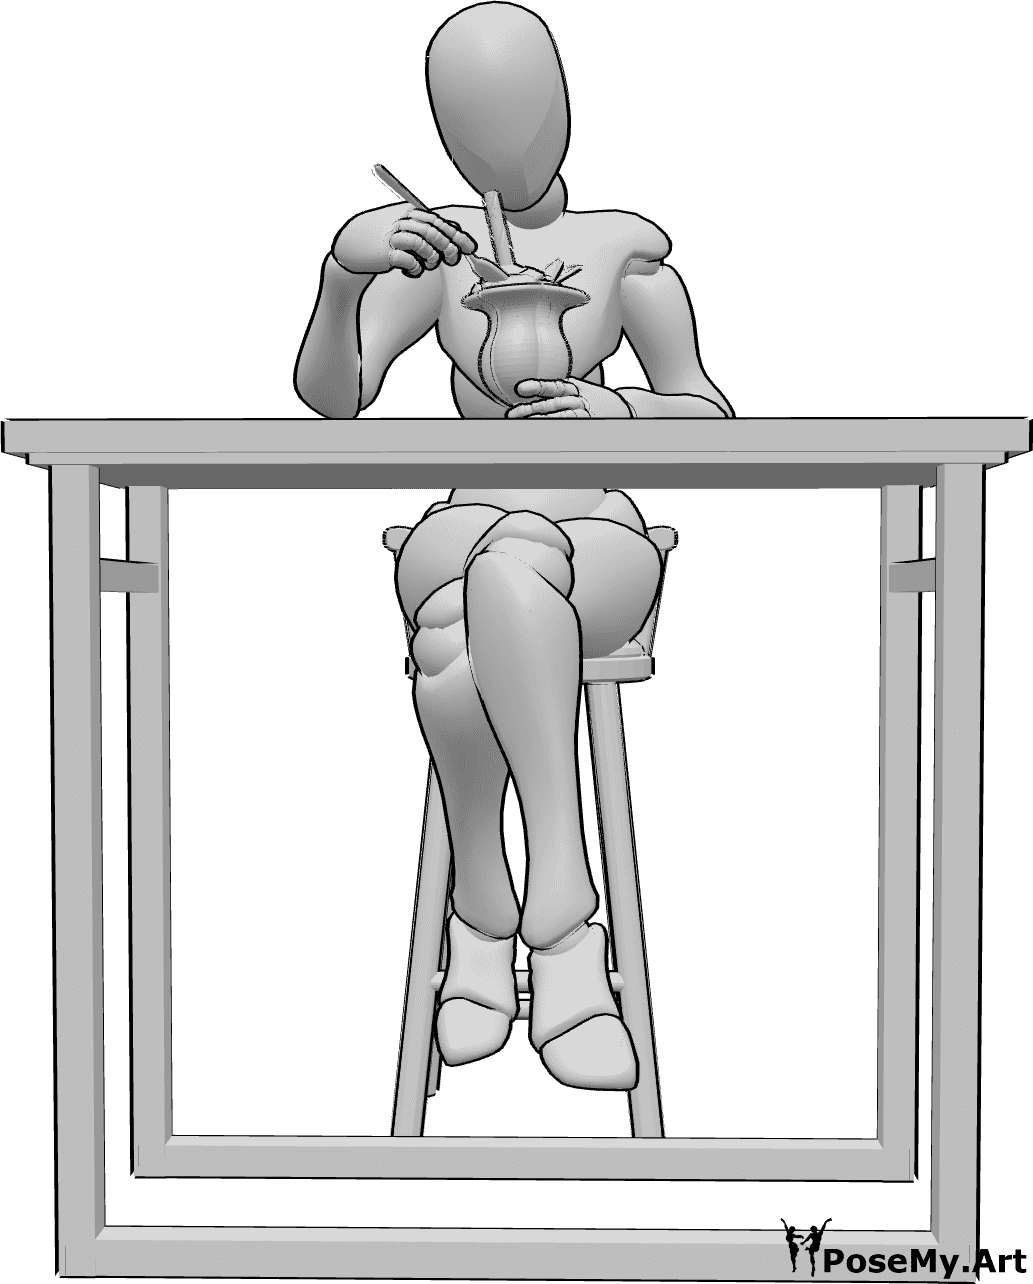 Référence des poses- Pose de crème glacée - Femme assise en train de manger, tenant une glace dans une coupe en verre, mangeant la glace avec une cuillère.